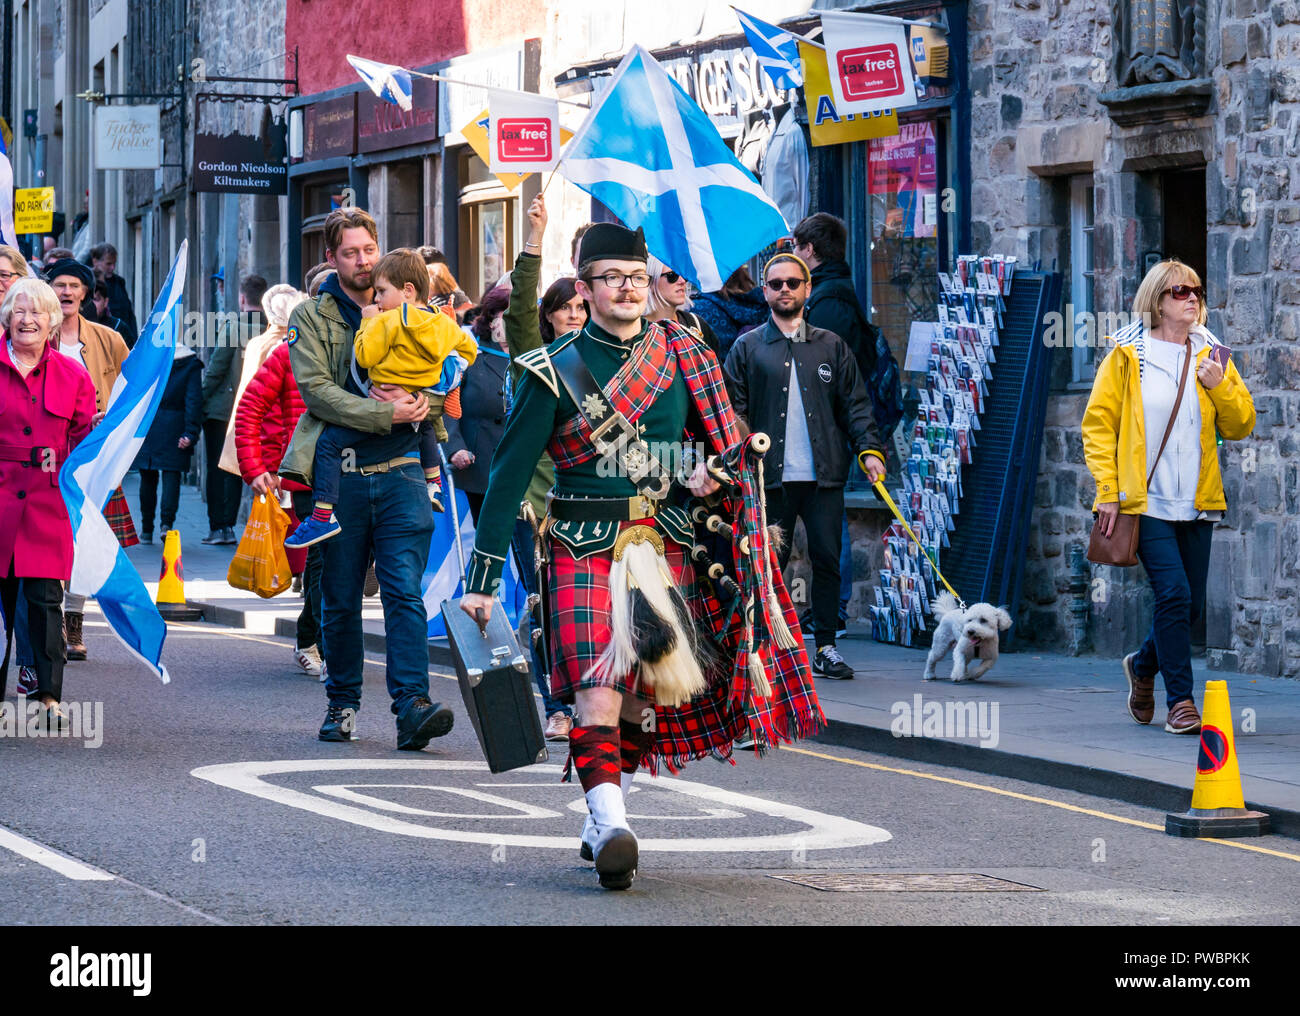 Mann im Kilt einheitlich auf alle unter einem Banner AU = B schottische Unabhängigkeit März 2018, Royal Mile, Edinburgh, Schottland, Großbritannien Stockfoto